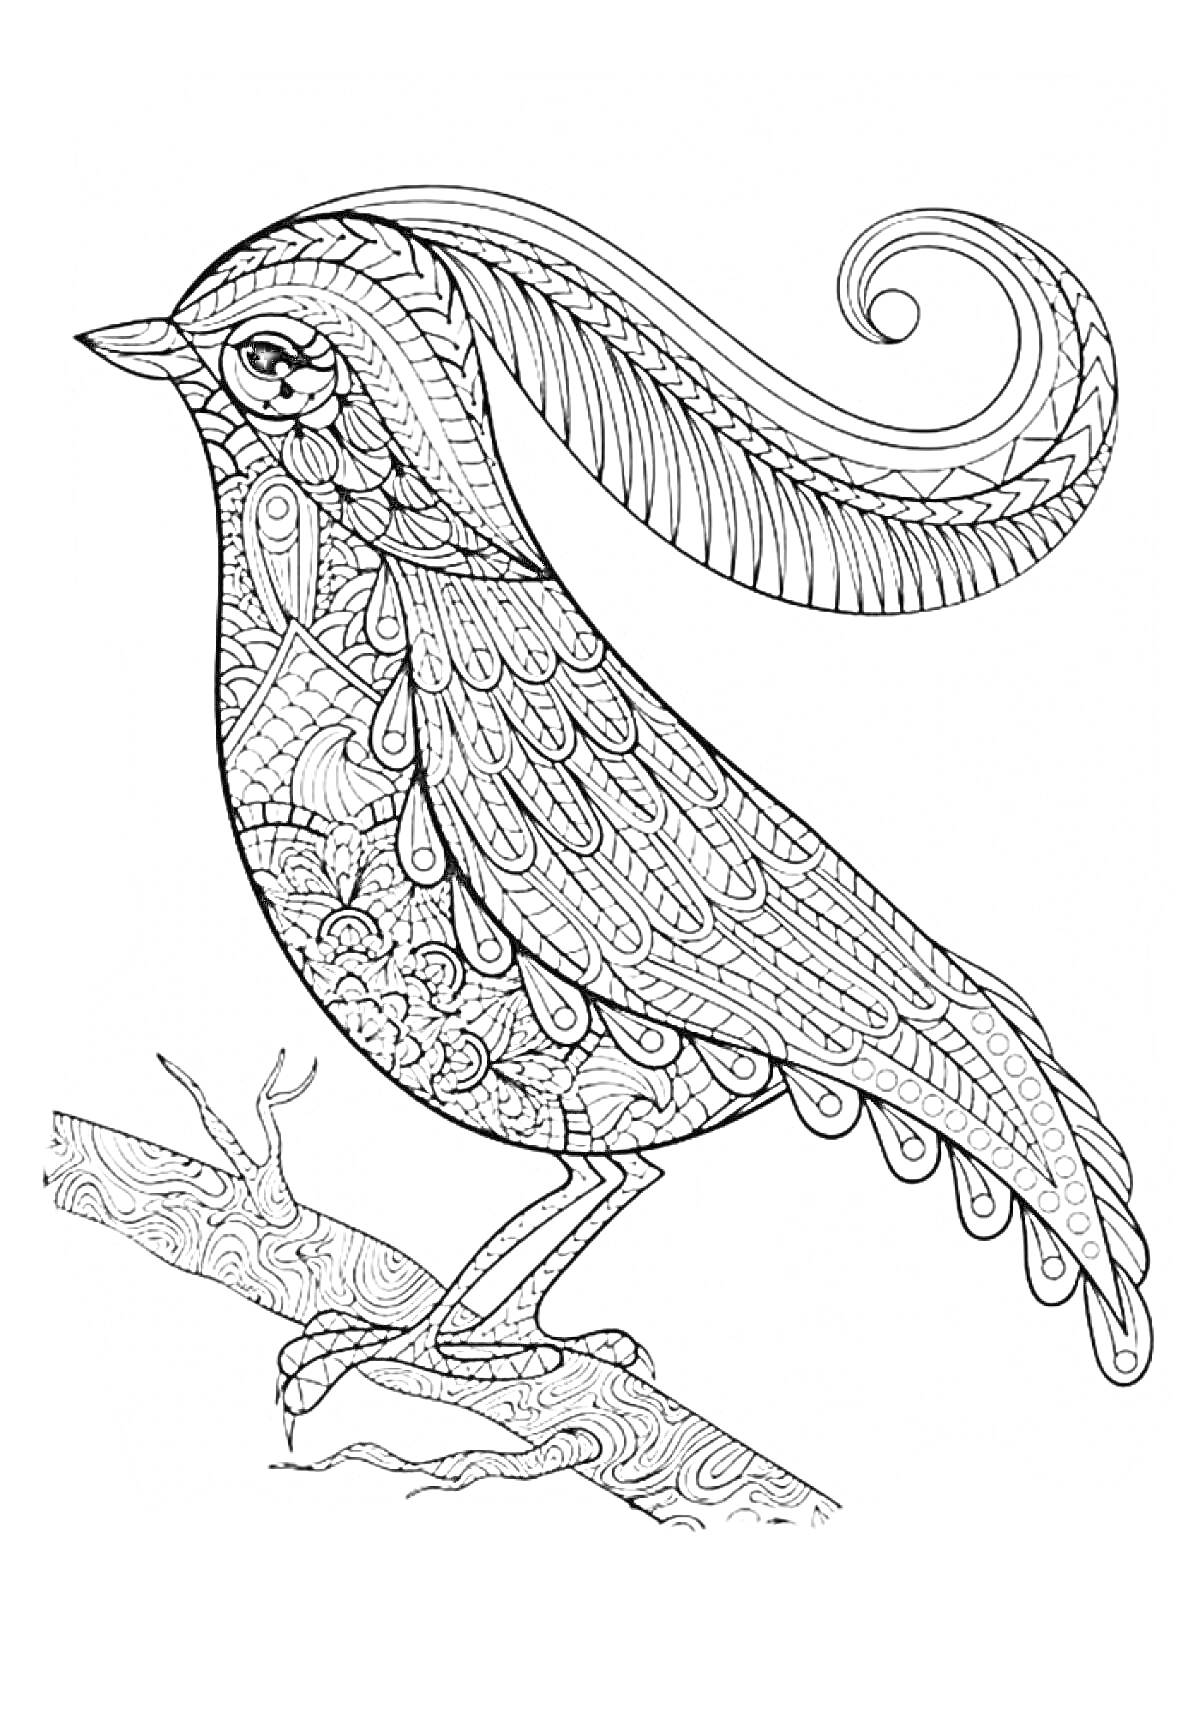 Раскраска Птица на ветке с узорными крыльями и хвостом